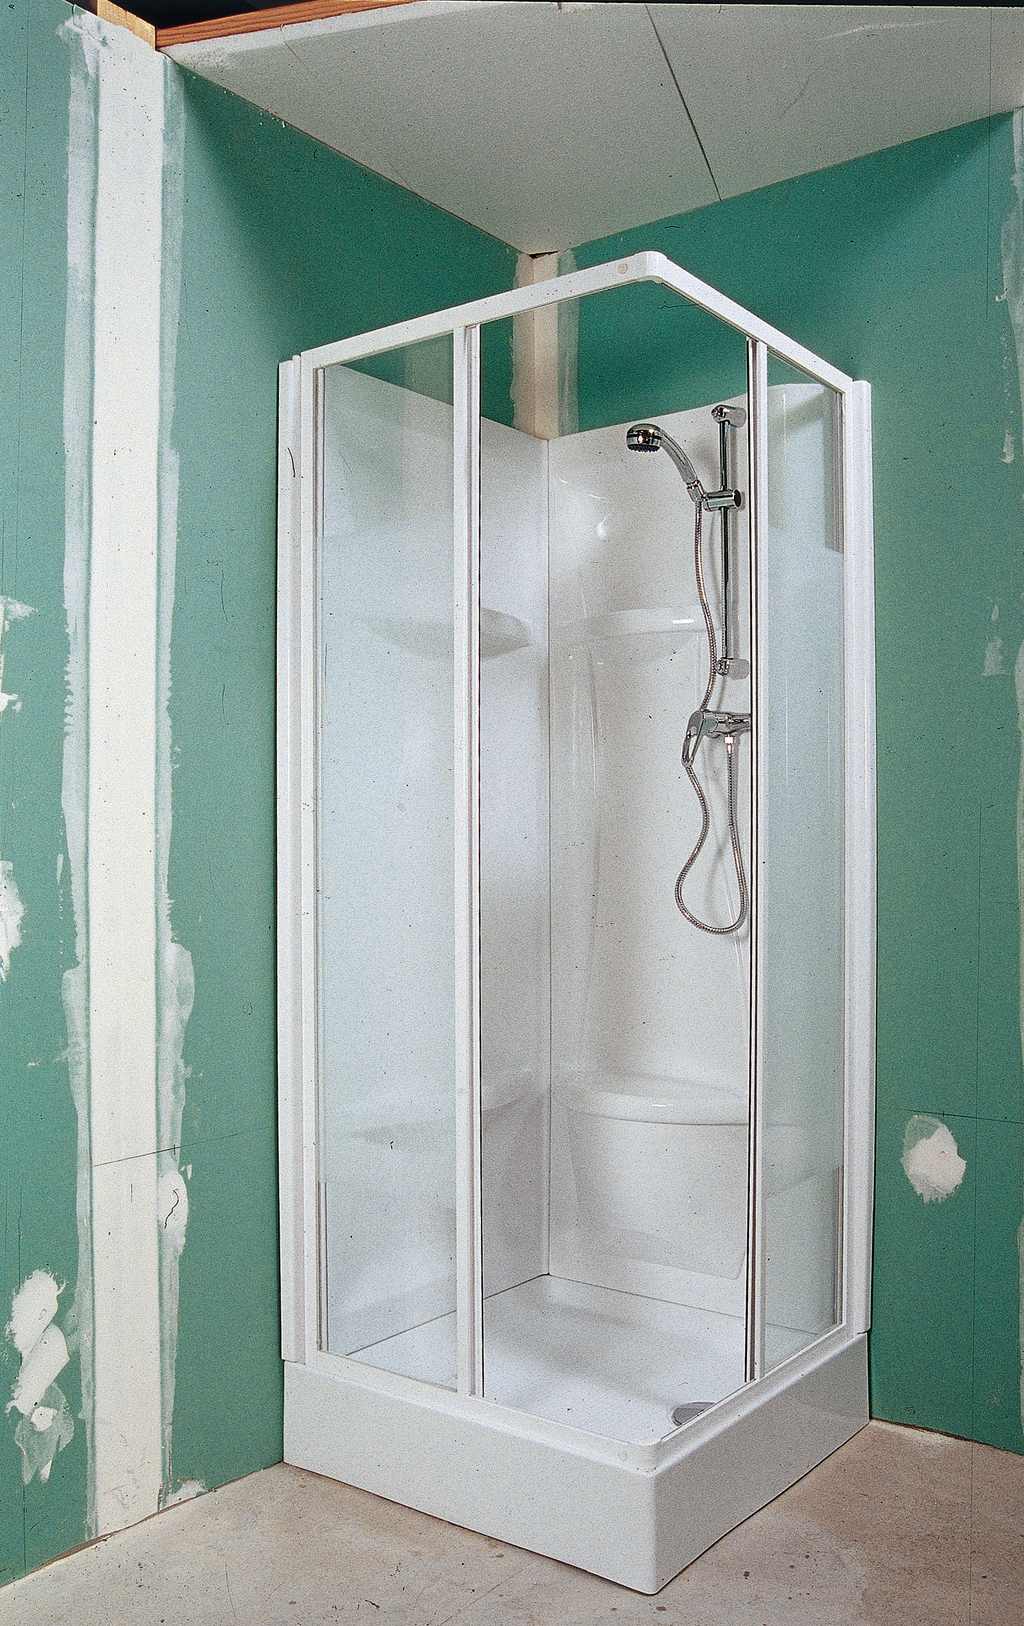 Fixer la robinetterie d'une douche intégrée